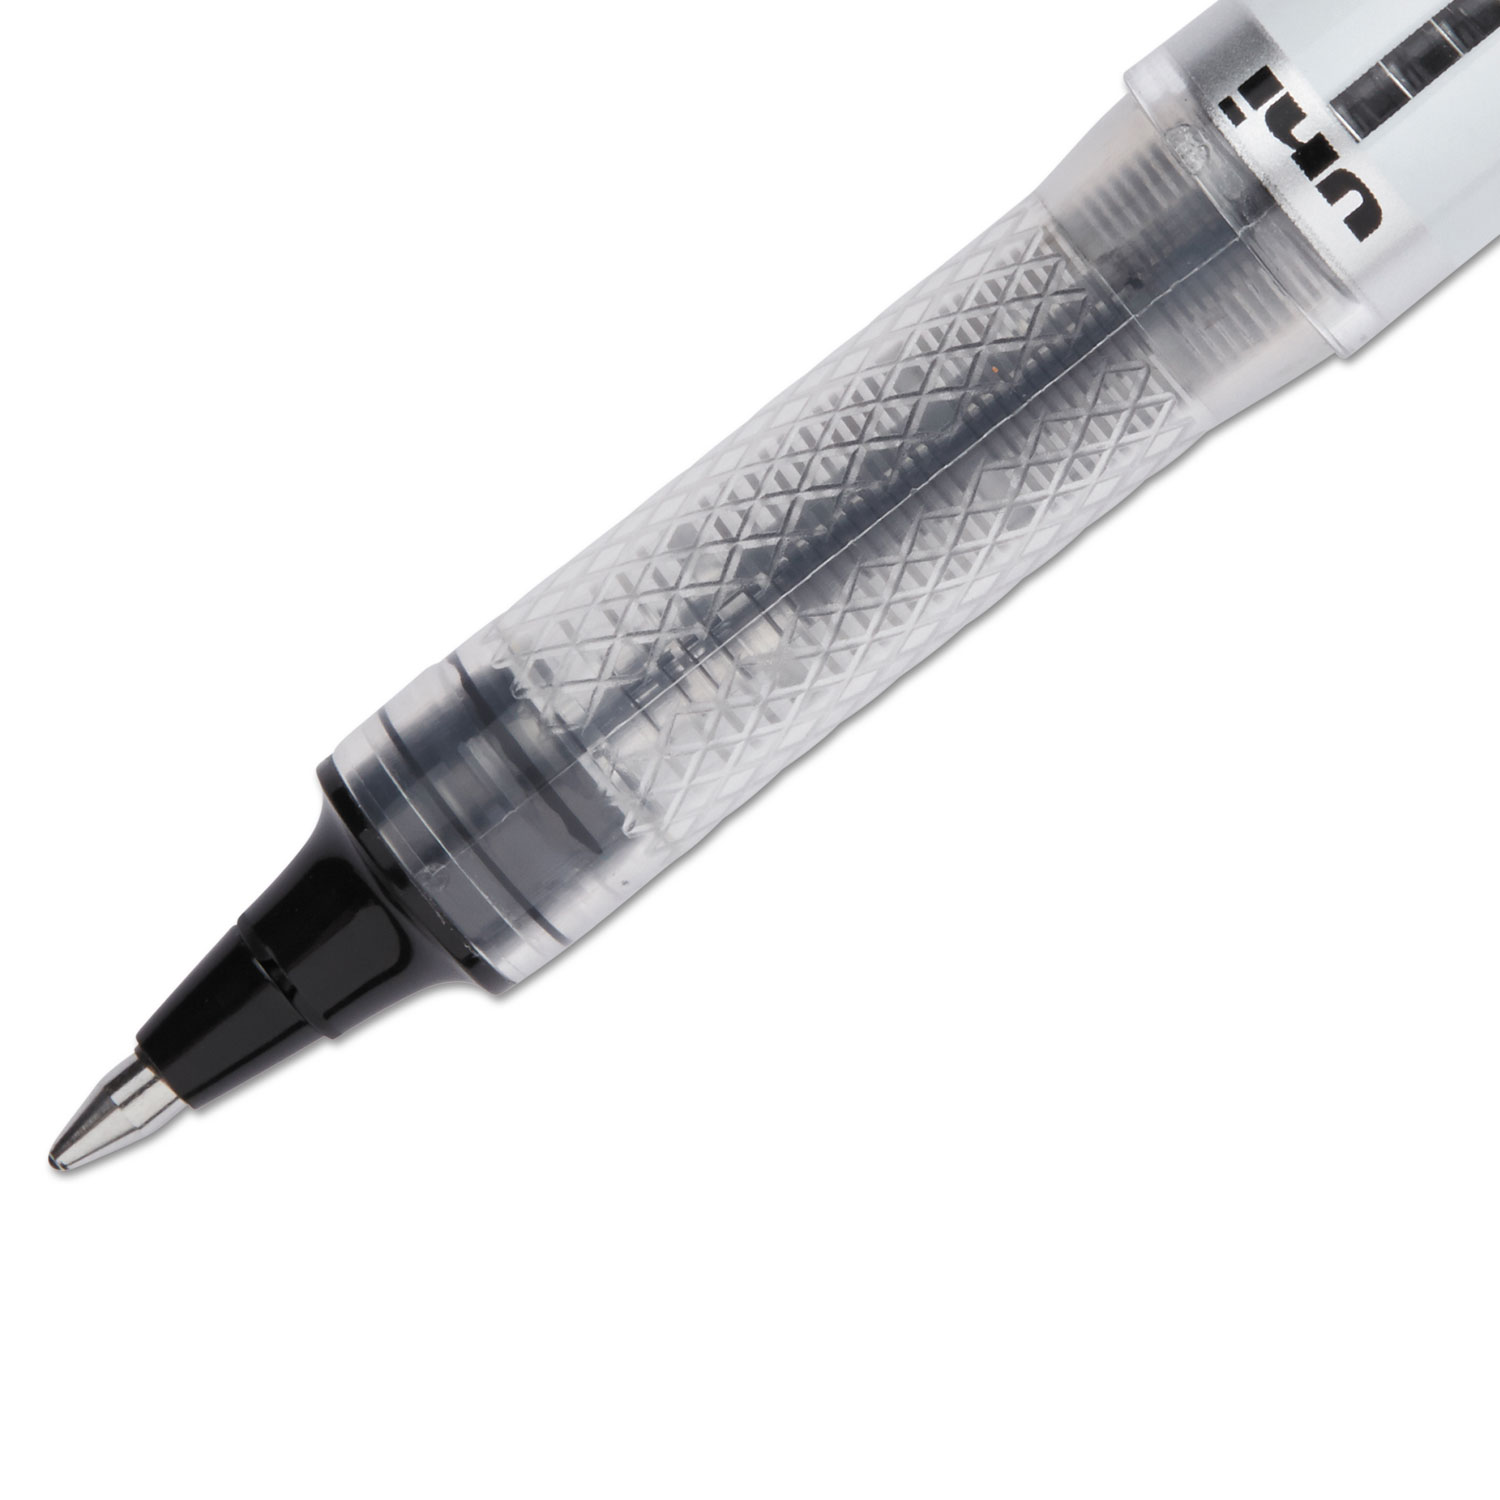 VISION ELITE Roller Ball Stick Waterproof Pen, Black Ink, Bold